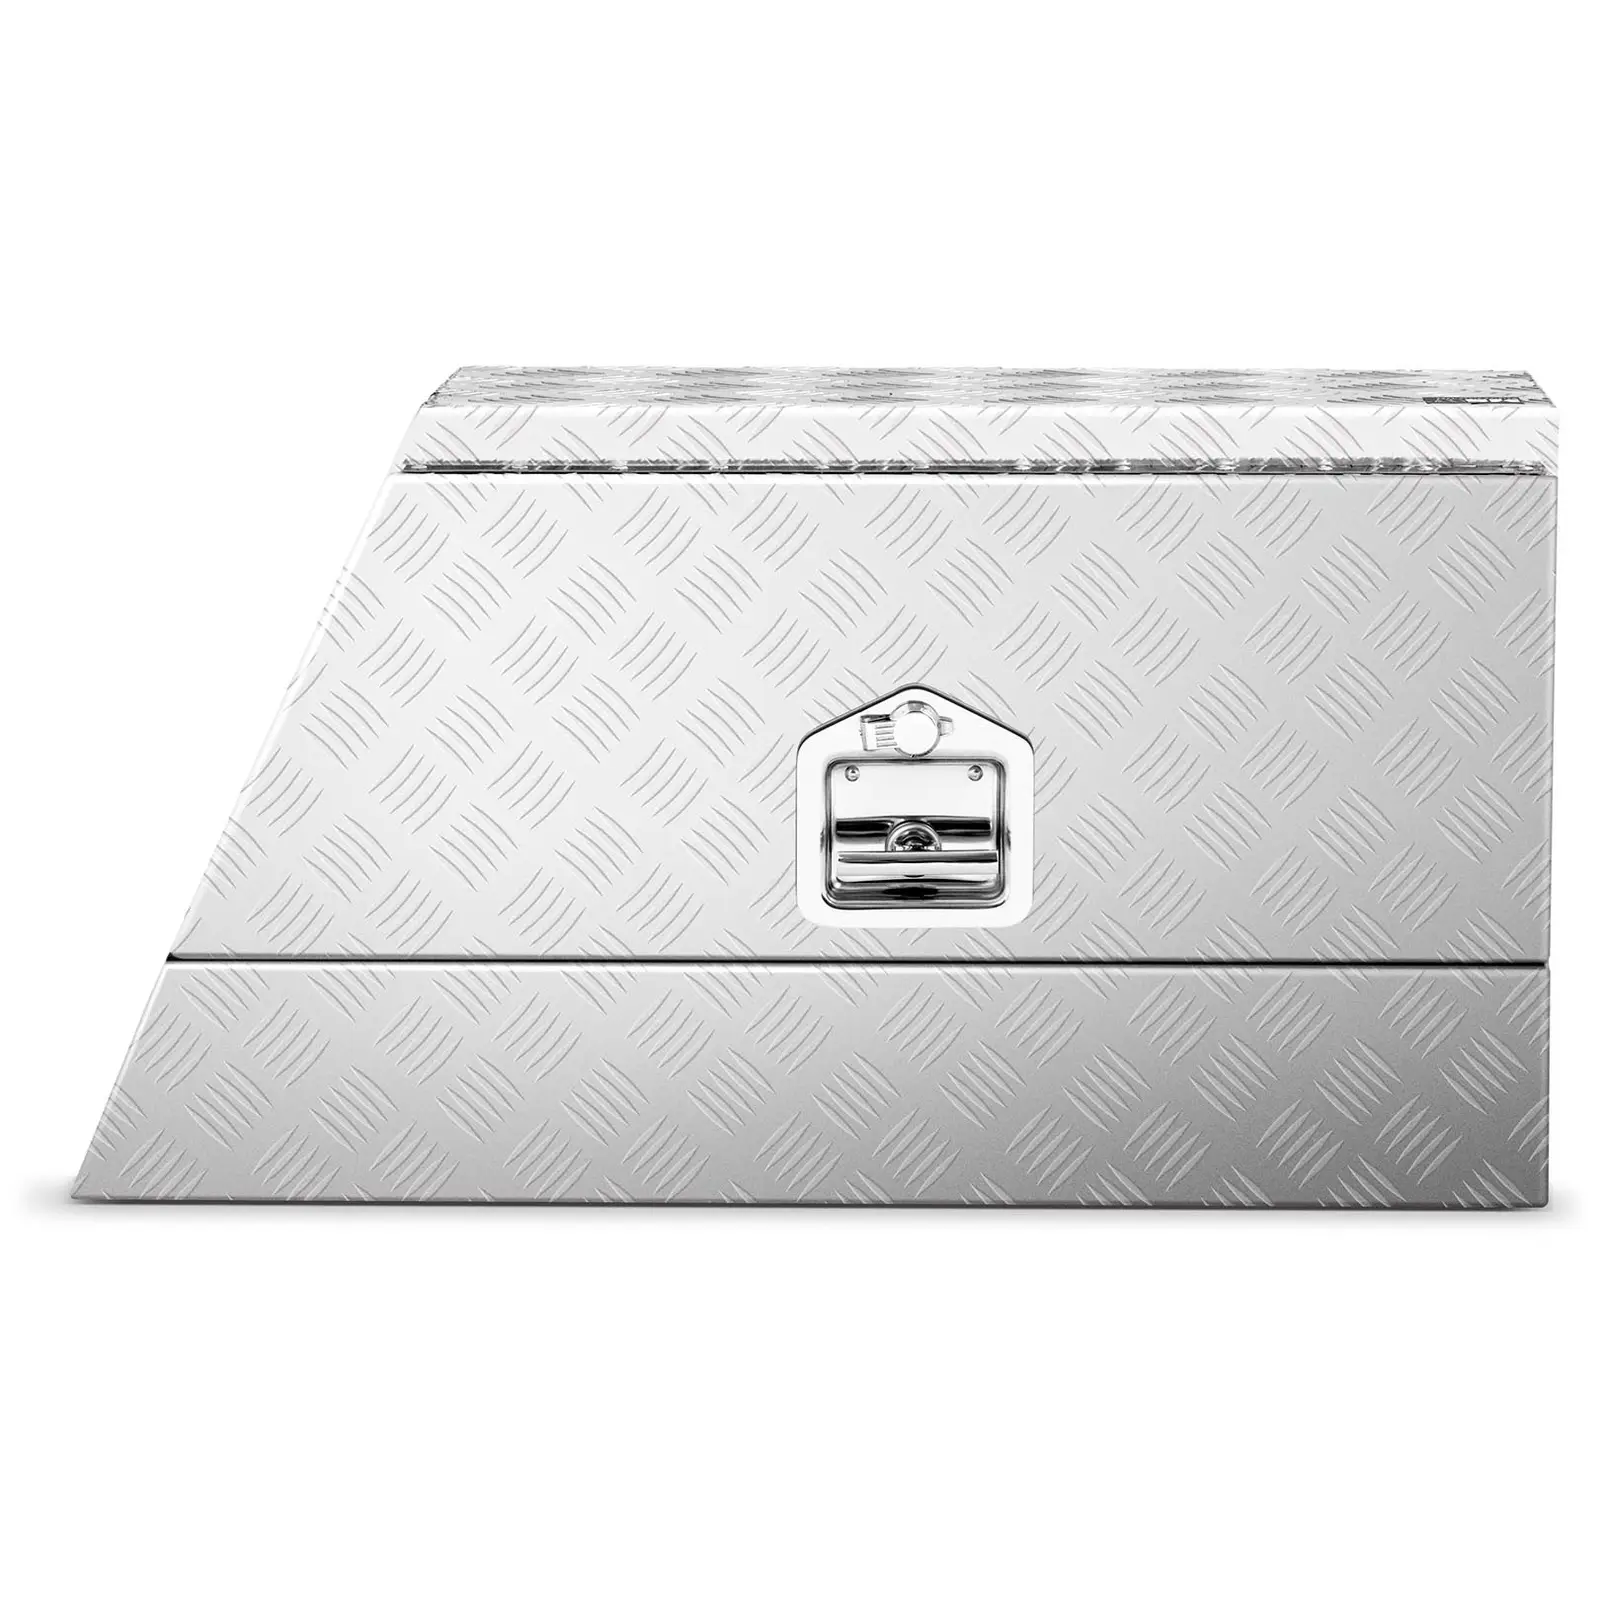 Hliníkový box - ryhovaný plech - 75 x 25 x 40 cm - 75 l - uzamykateľný - rovný